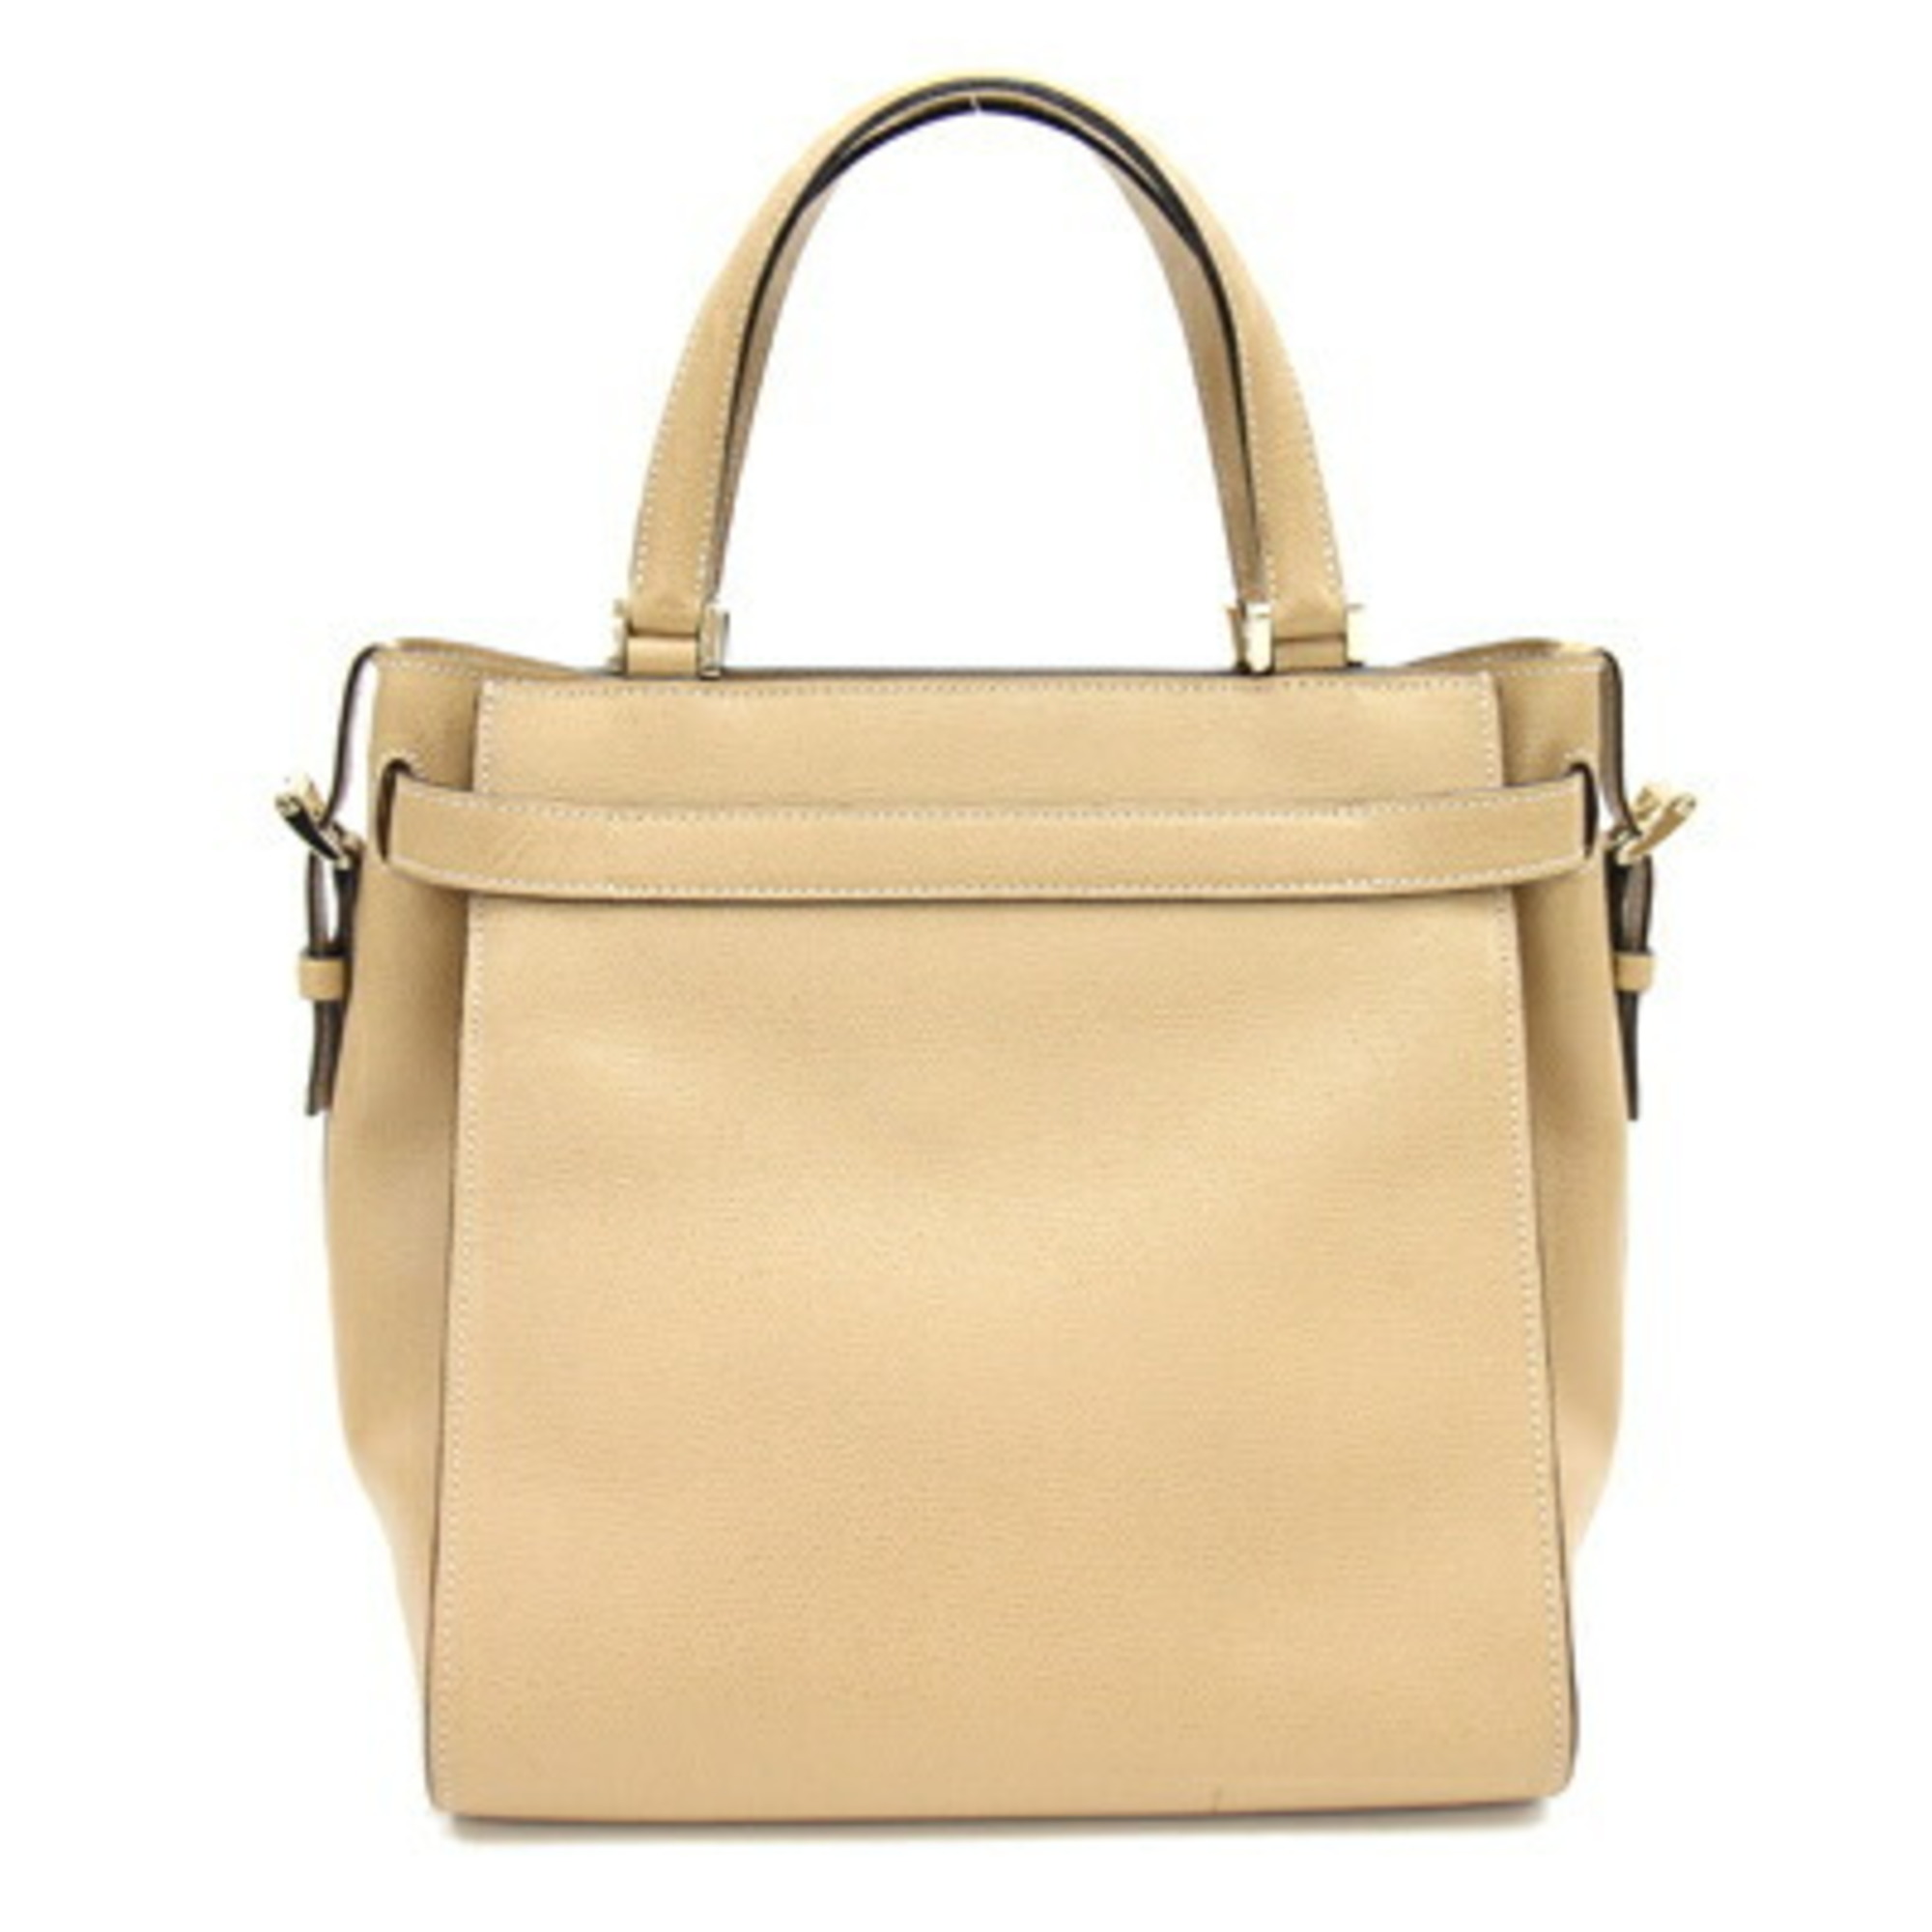 Valextra Handbag B Cube V5C67 Beige Leather Shoulder Bag Ladies